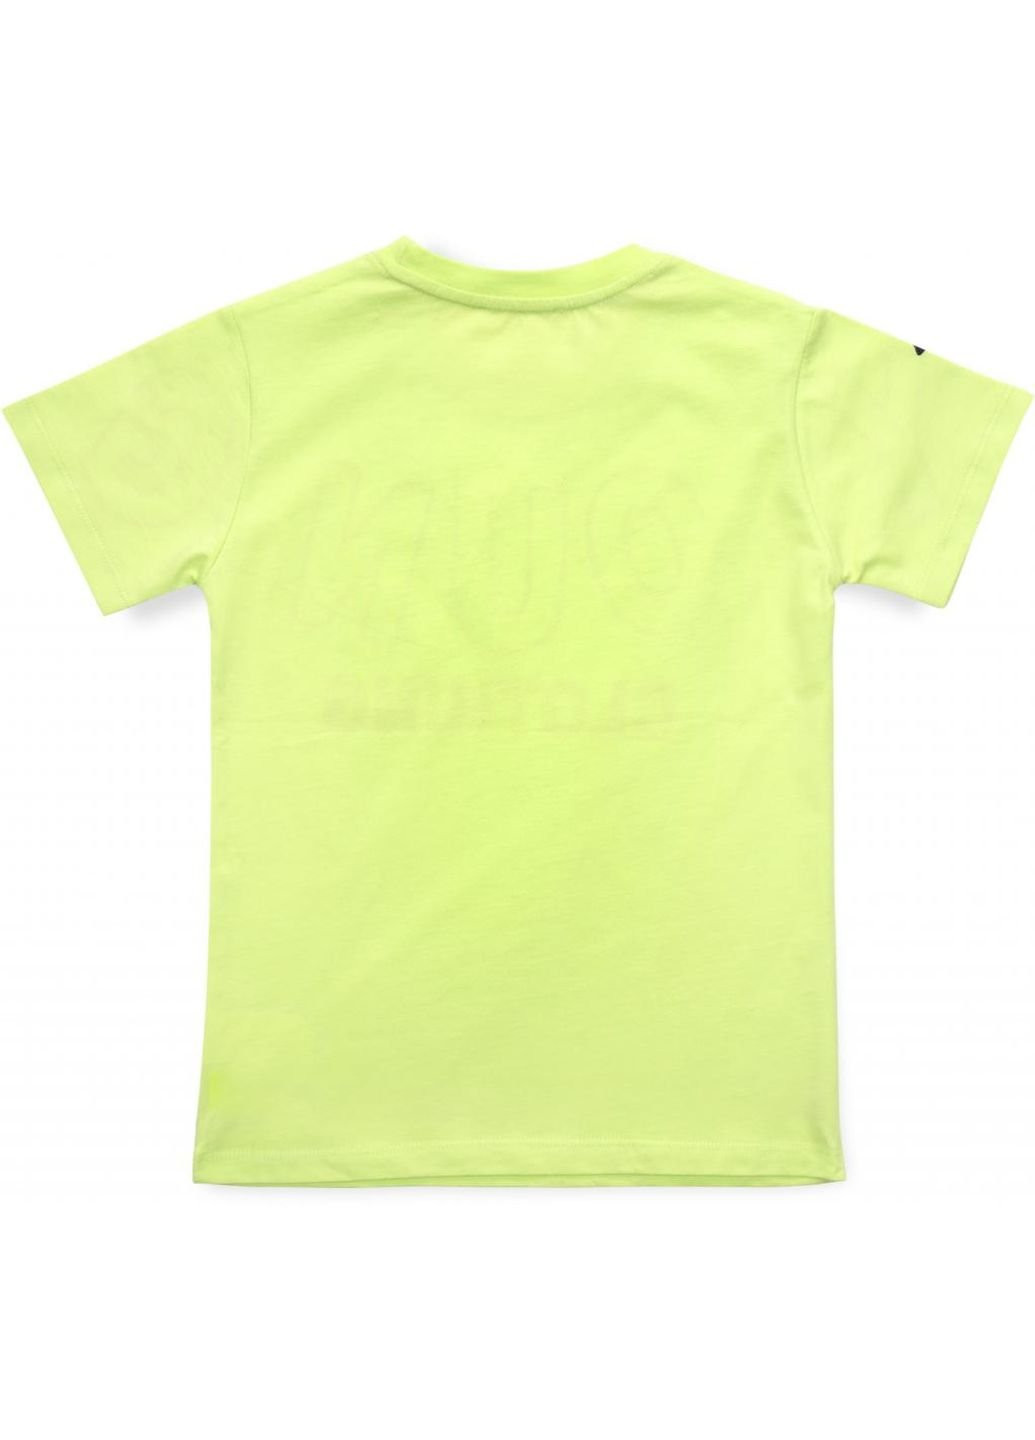 Красная демисезонная футболка детская "young clothing" (15159-134b-green) Breeze